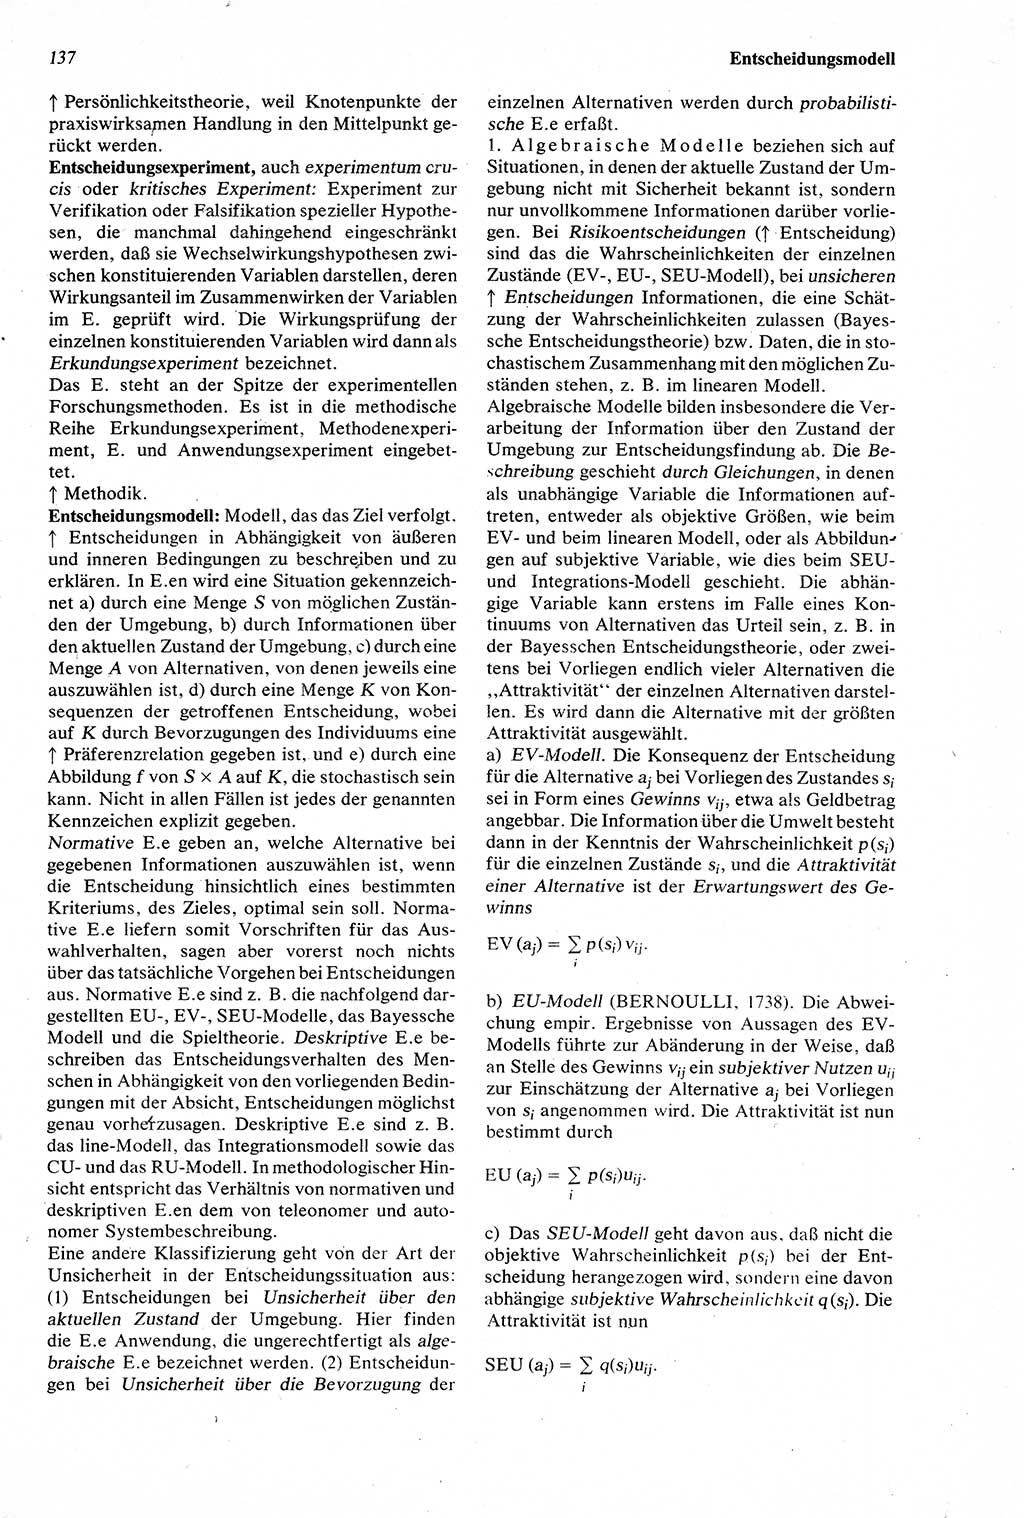 Wörterbuch der Psychologie [Deutsche Demokratische Republik (DDR)] 1976, Seite 137 (Wb. Psych. DDR 1976, S. 137)